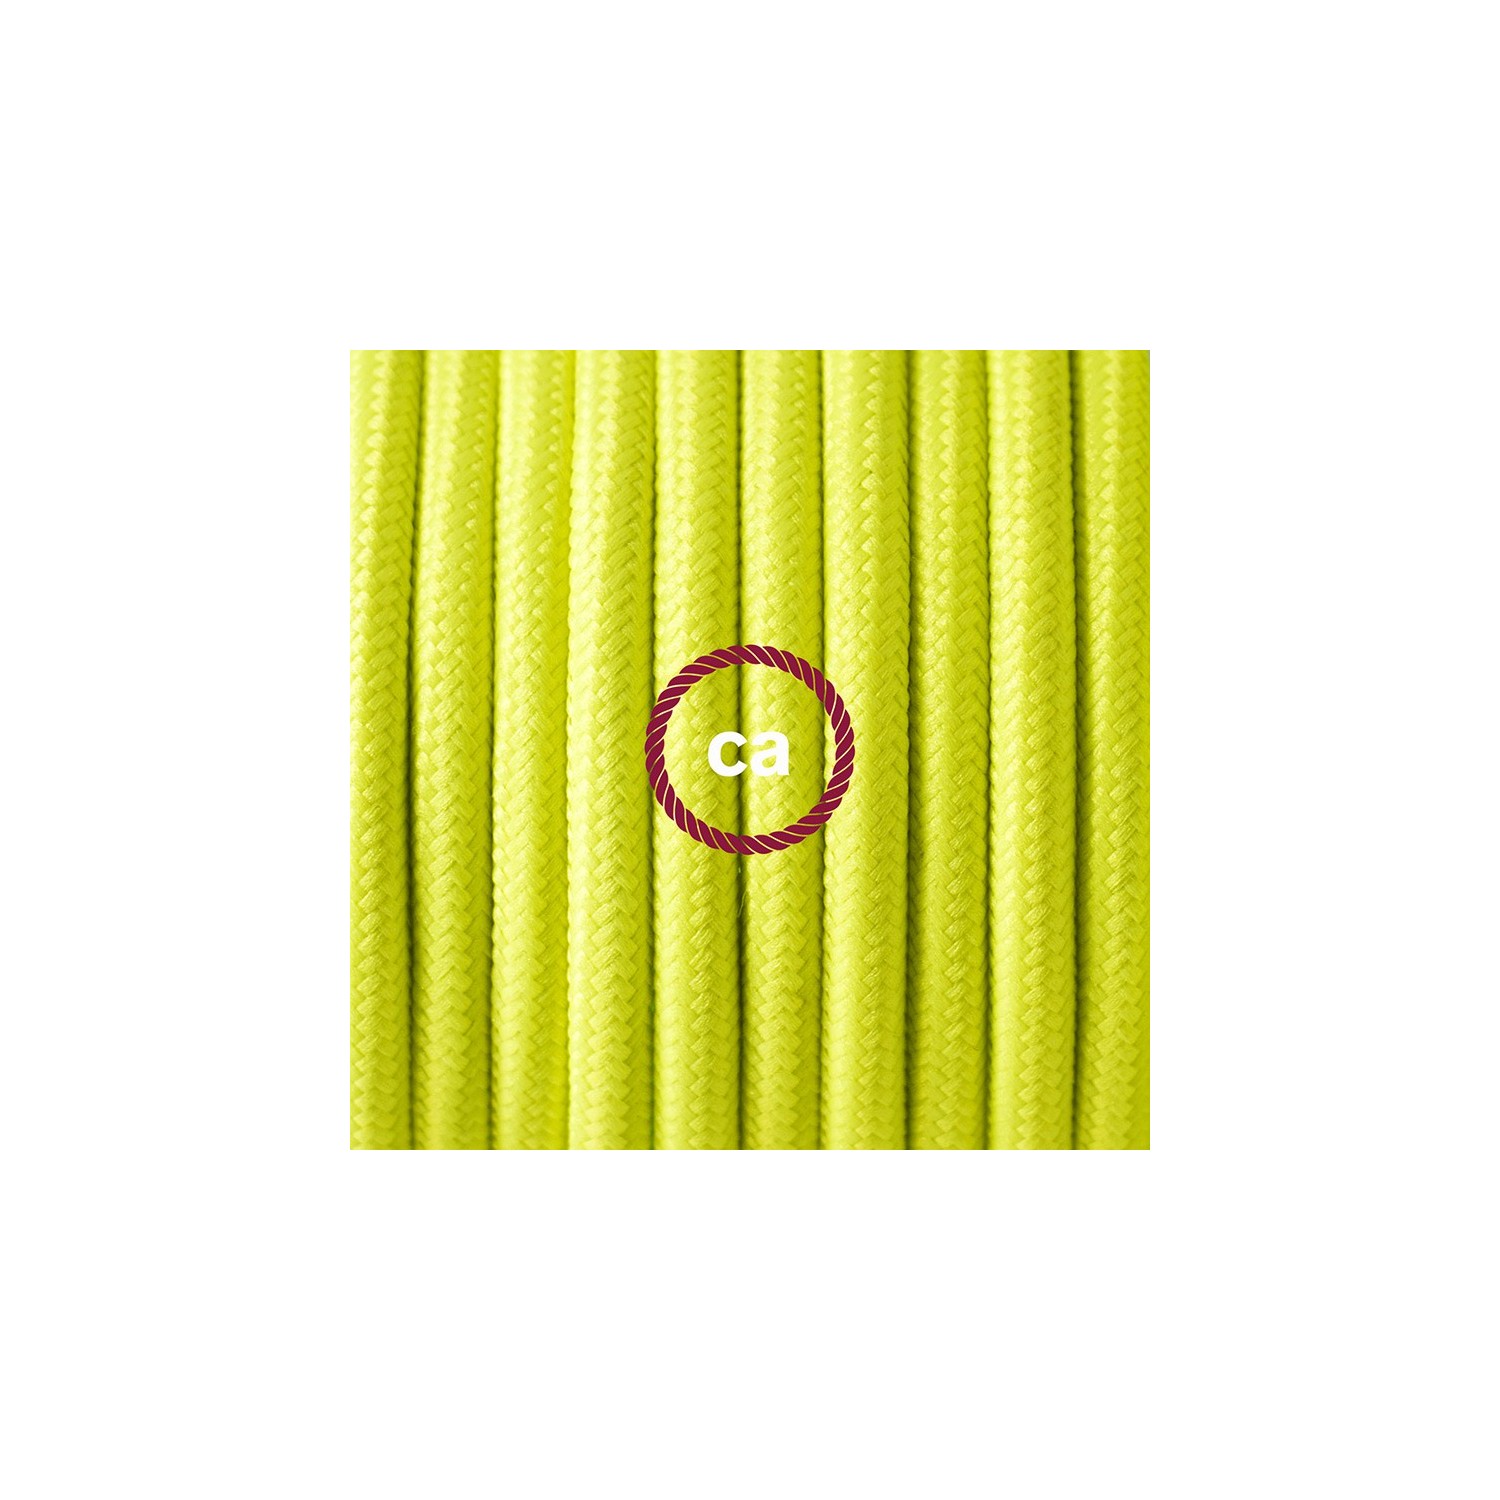 Cabo para candeeiro de mesa, RF10 Amarelo Neon Seda Artificial 1,80 m. Escolha a cor da ficha e do interruptor.